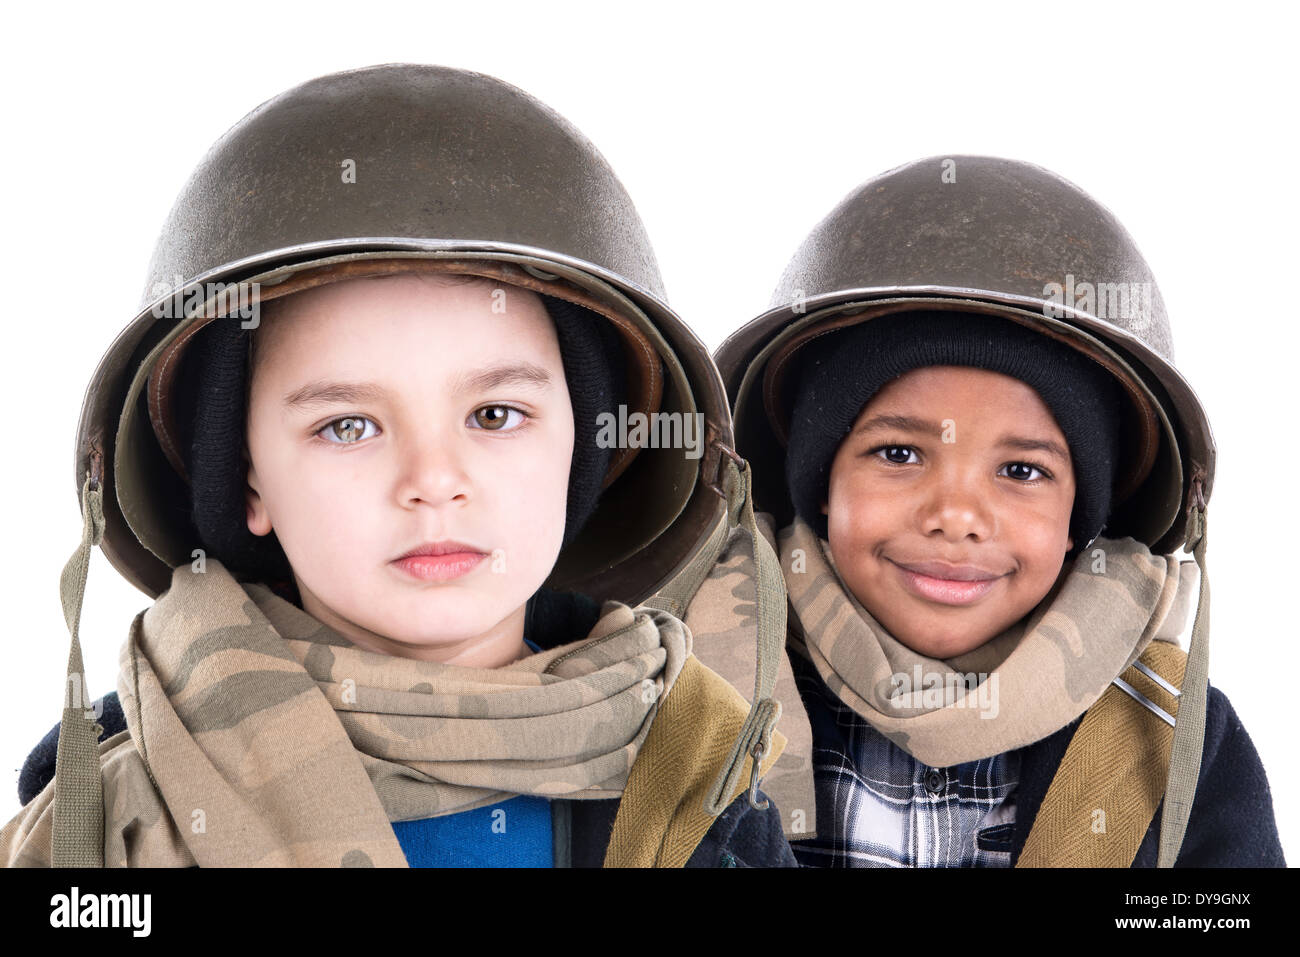 Los muchachos en uniforme militar aislado en blanco Foto de stock